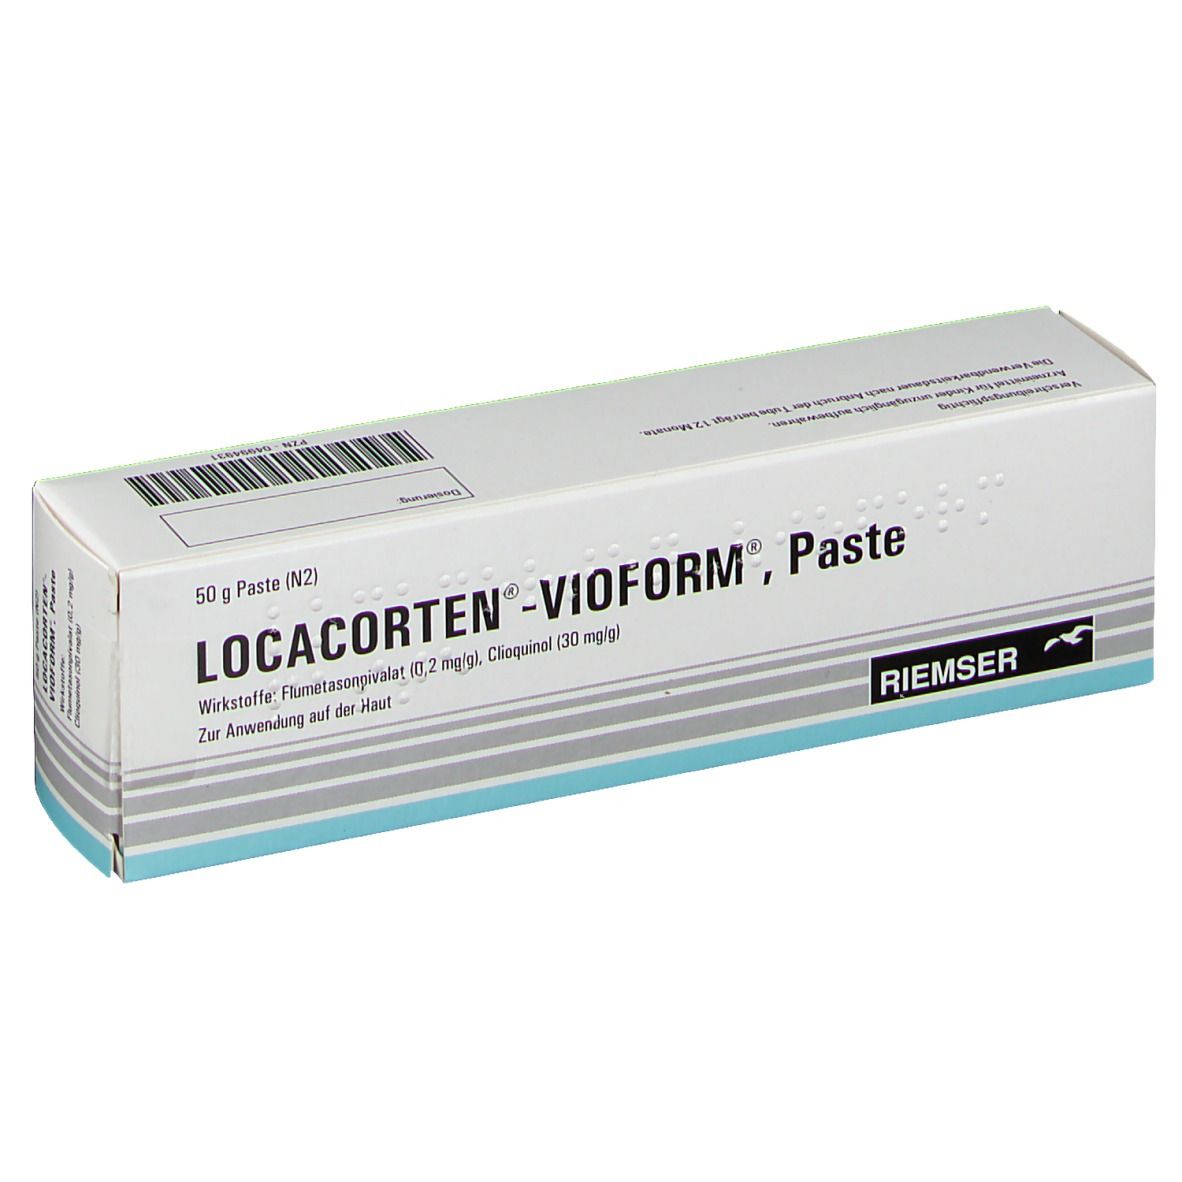 LOCACORTEN®-VIOFORM®